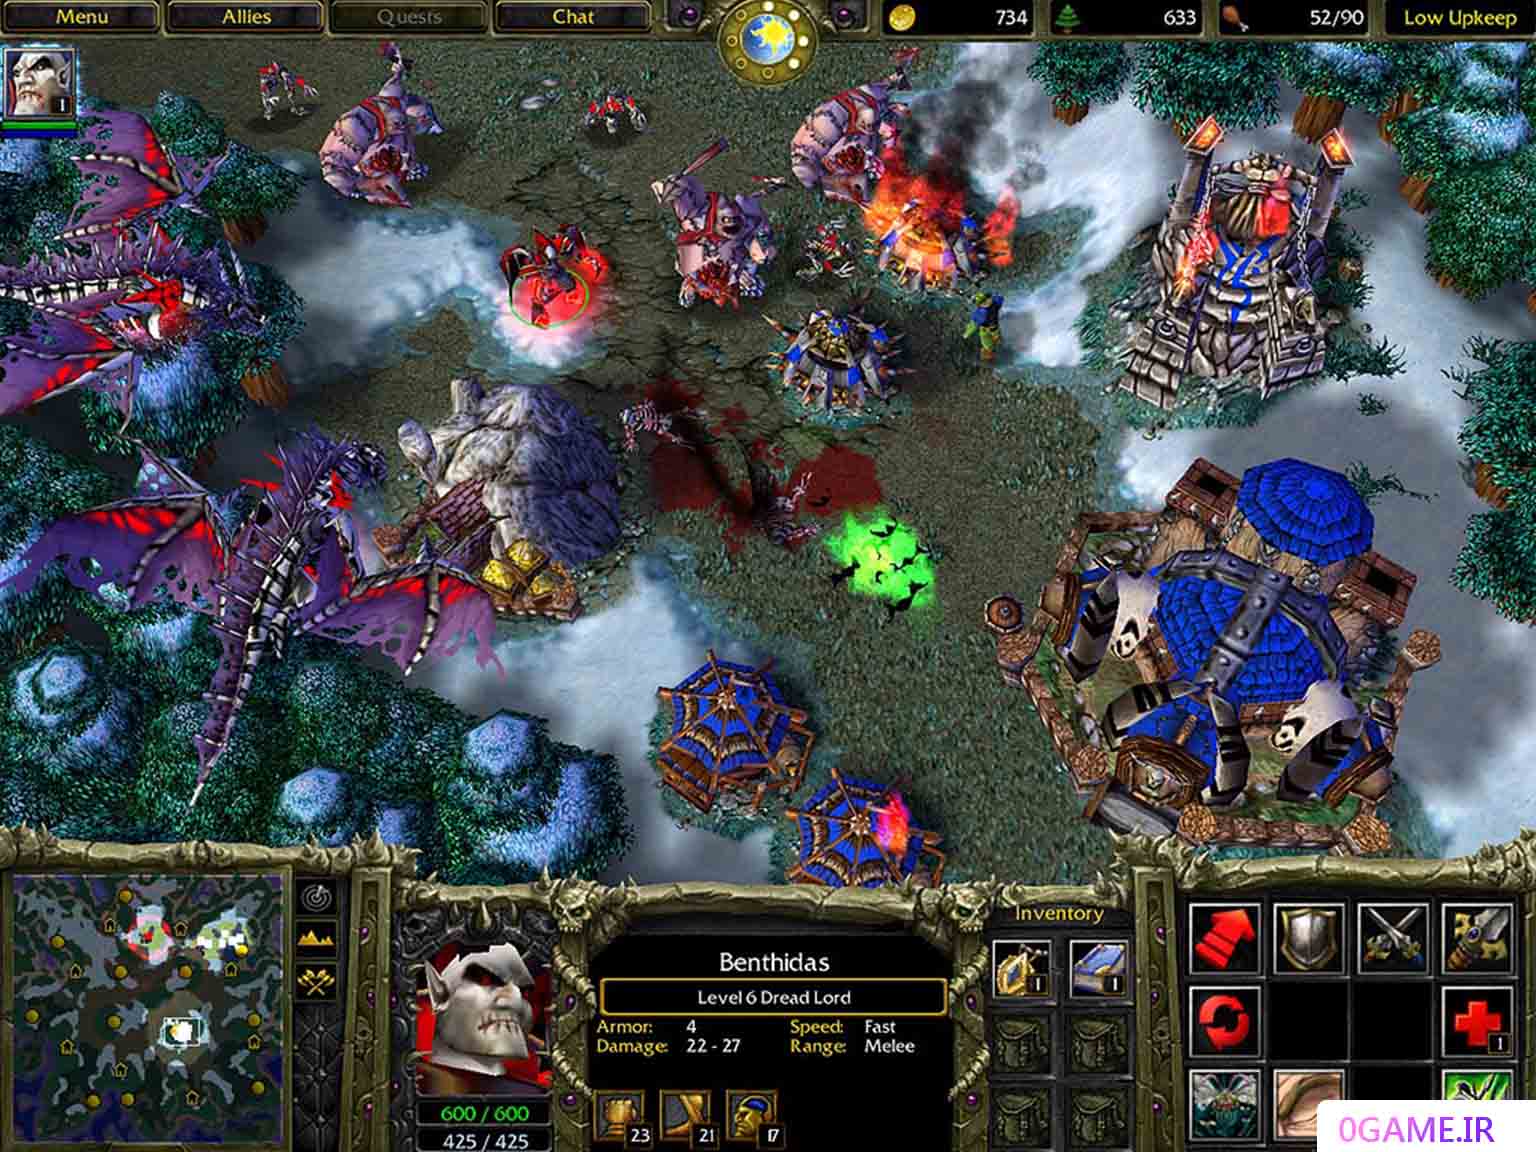 دانلود بازی وارکرفت ۳ (Warcraft III) نسخه کامل برای کامپیوتر